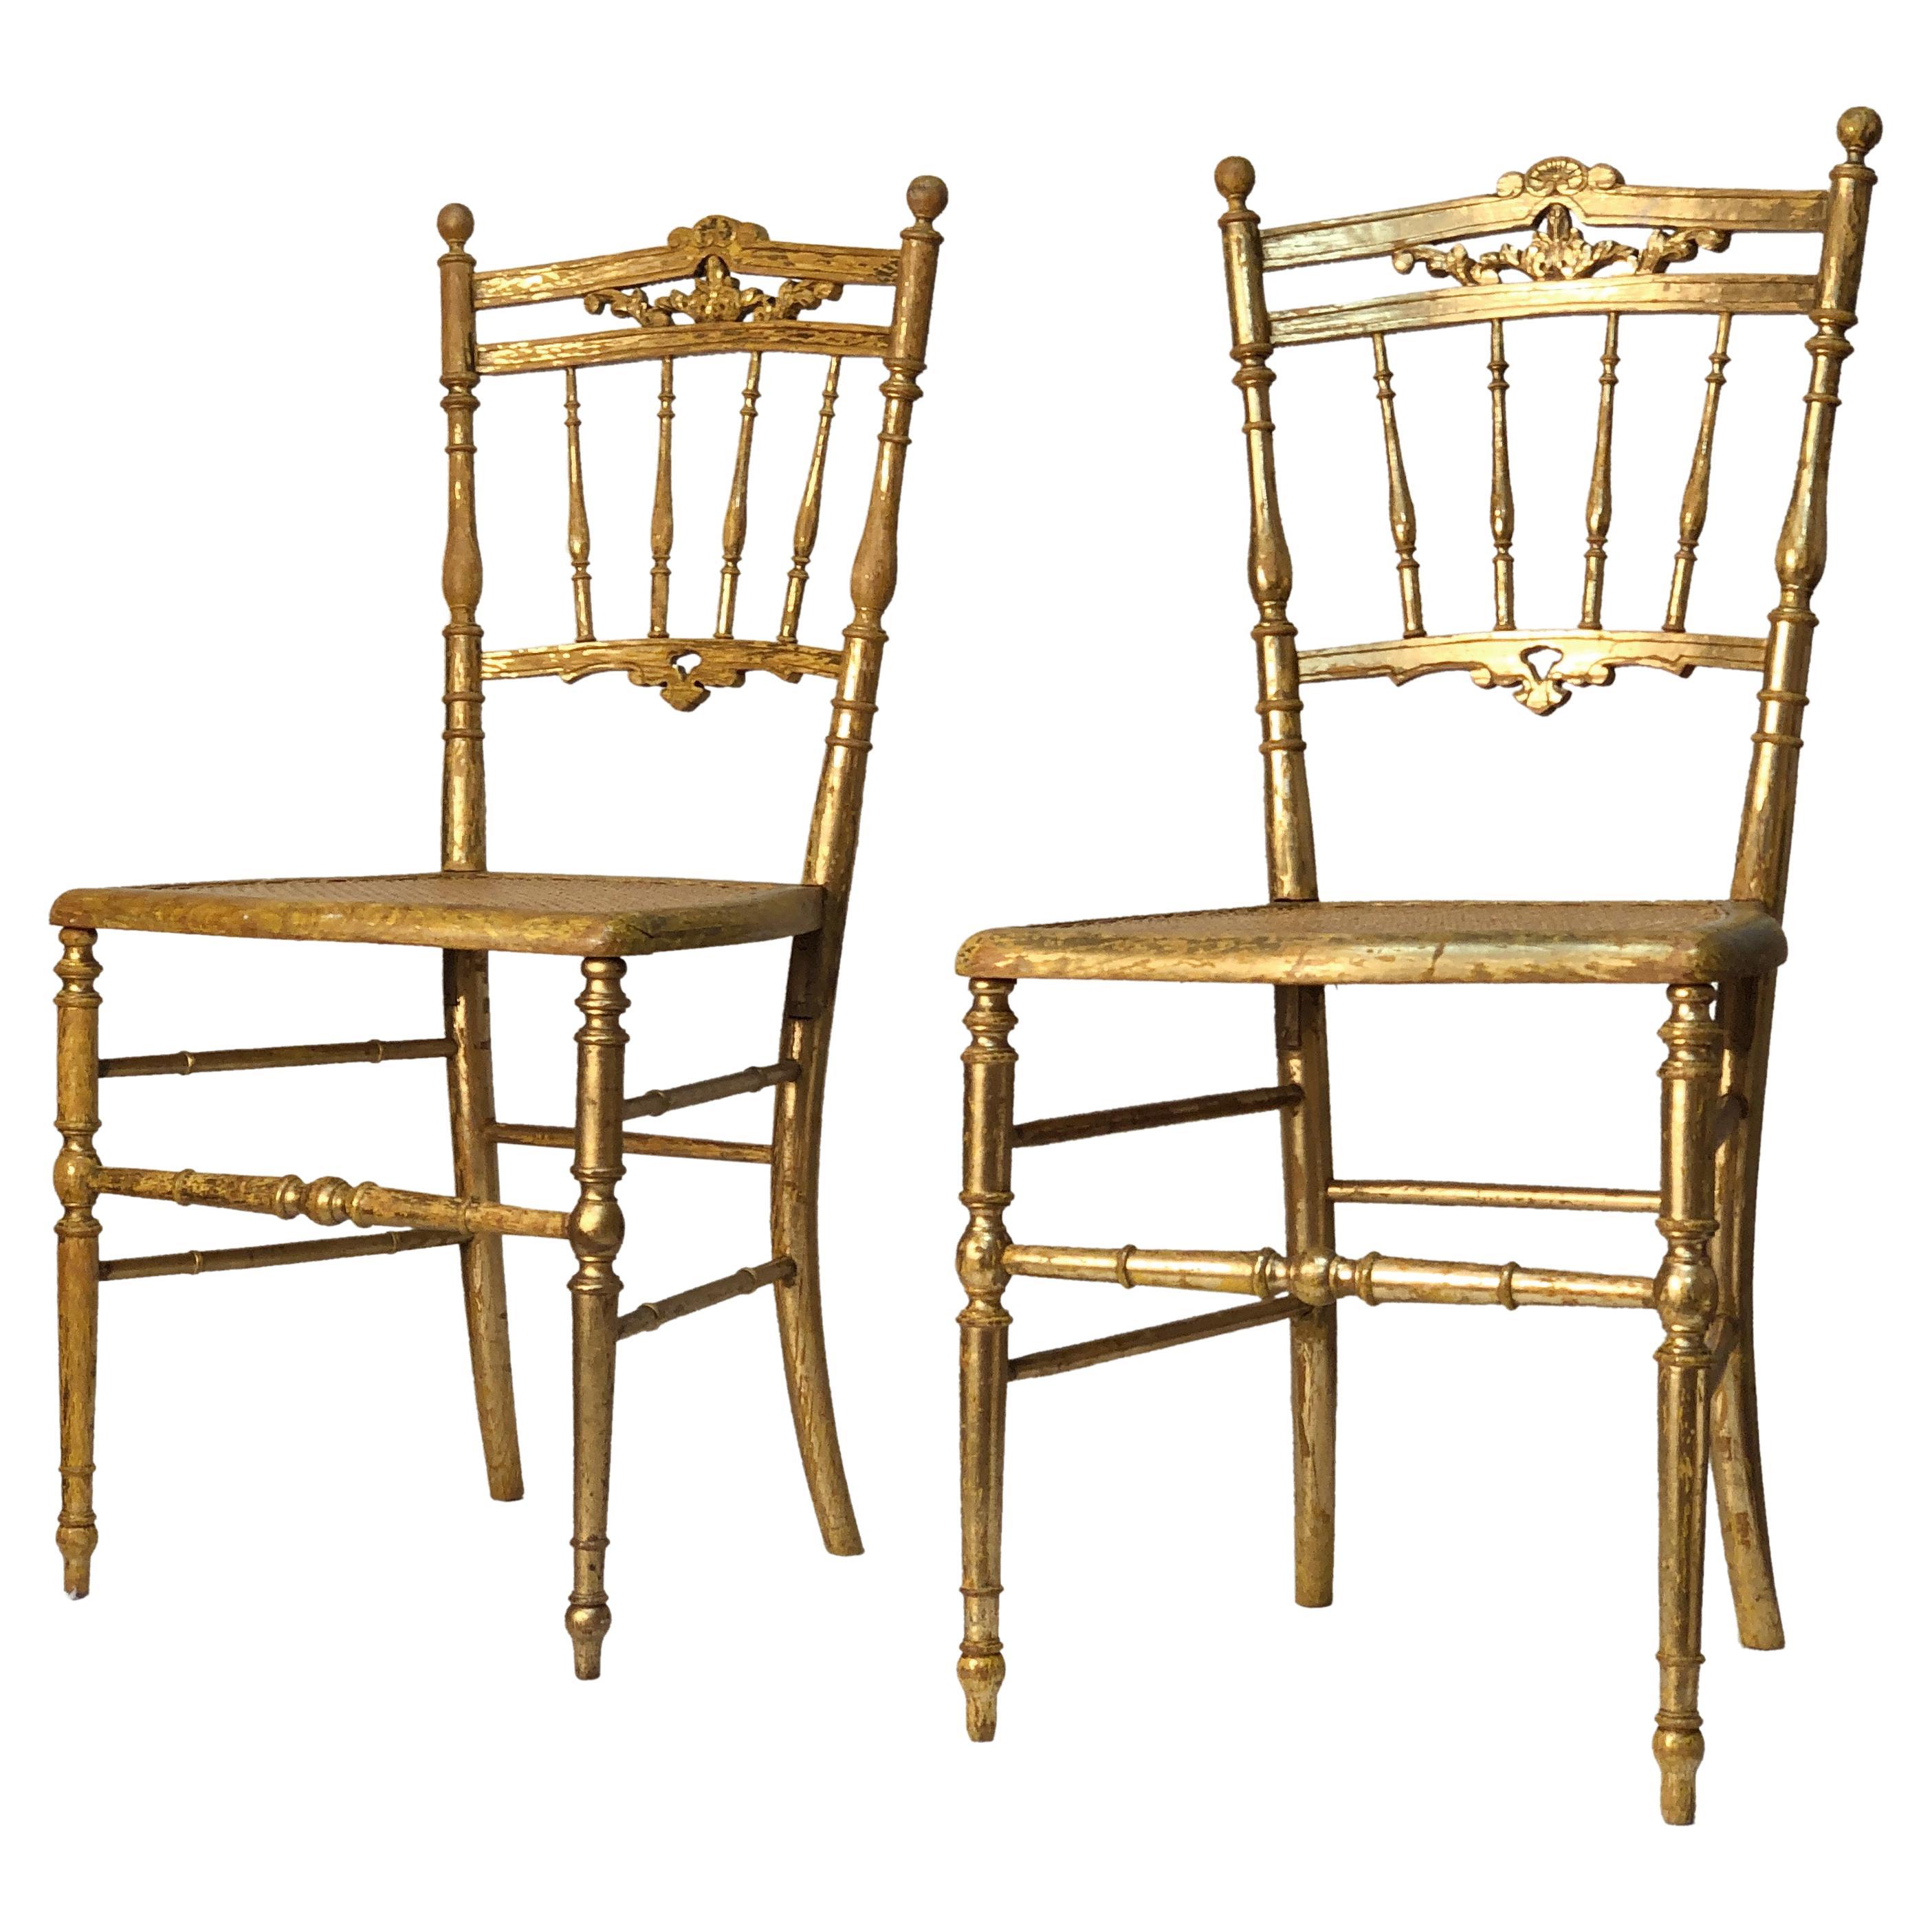 Vergoldete italienische Chiavari-Stühle des 17. Jahrhunderts